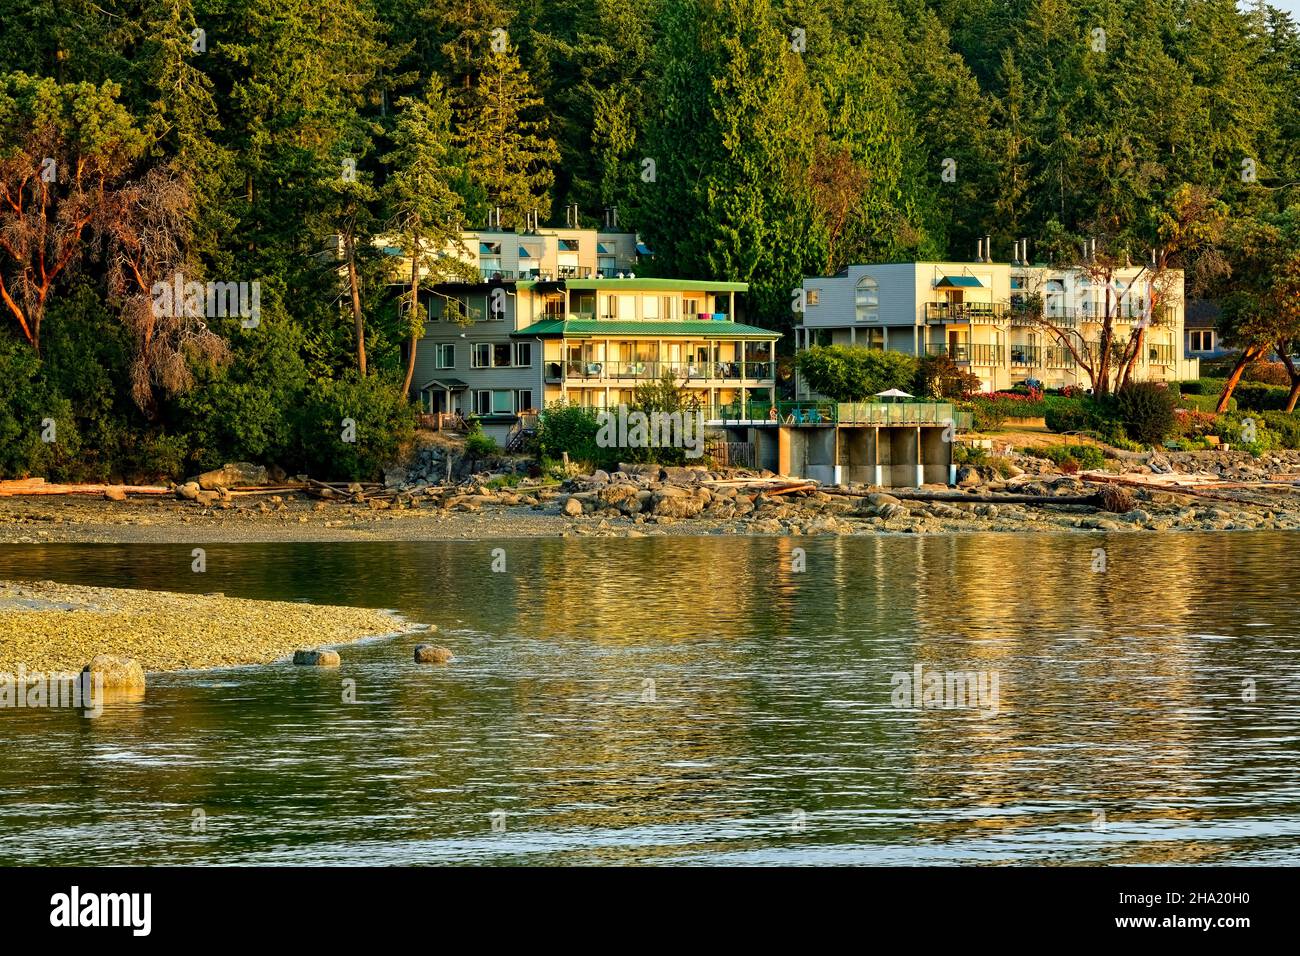 El complejo turístico Inn of the Sea está situado en el borde del agua en el canal Stuart entre las islas del Golfo y la hermosa Vancouver Isand British Col Foto de stock